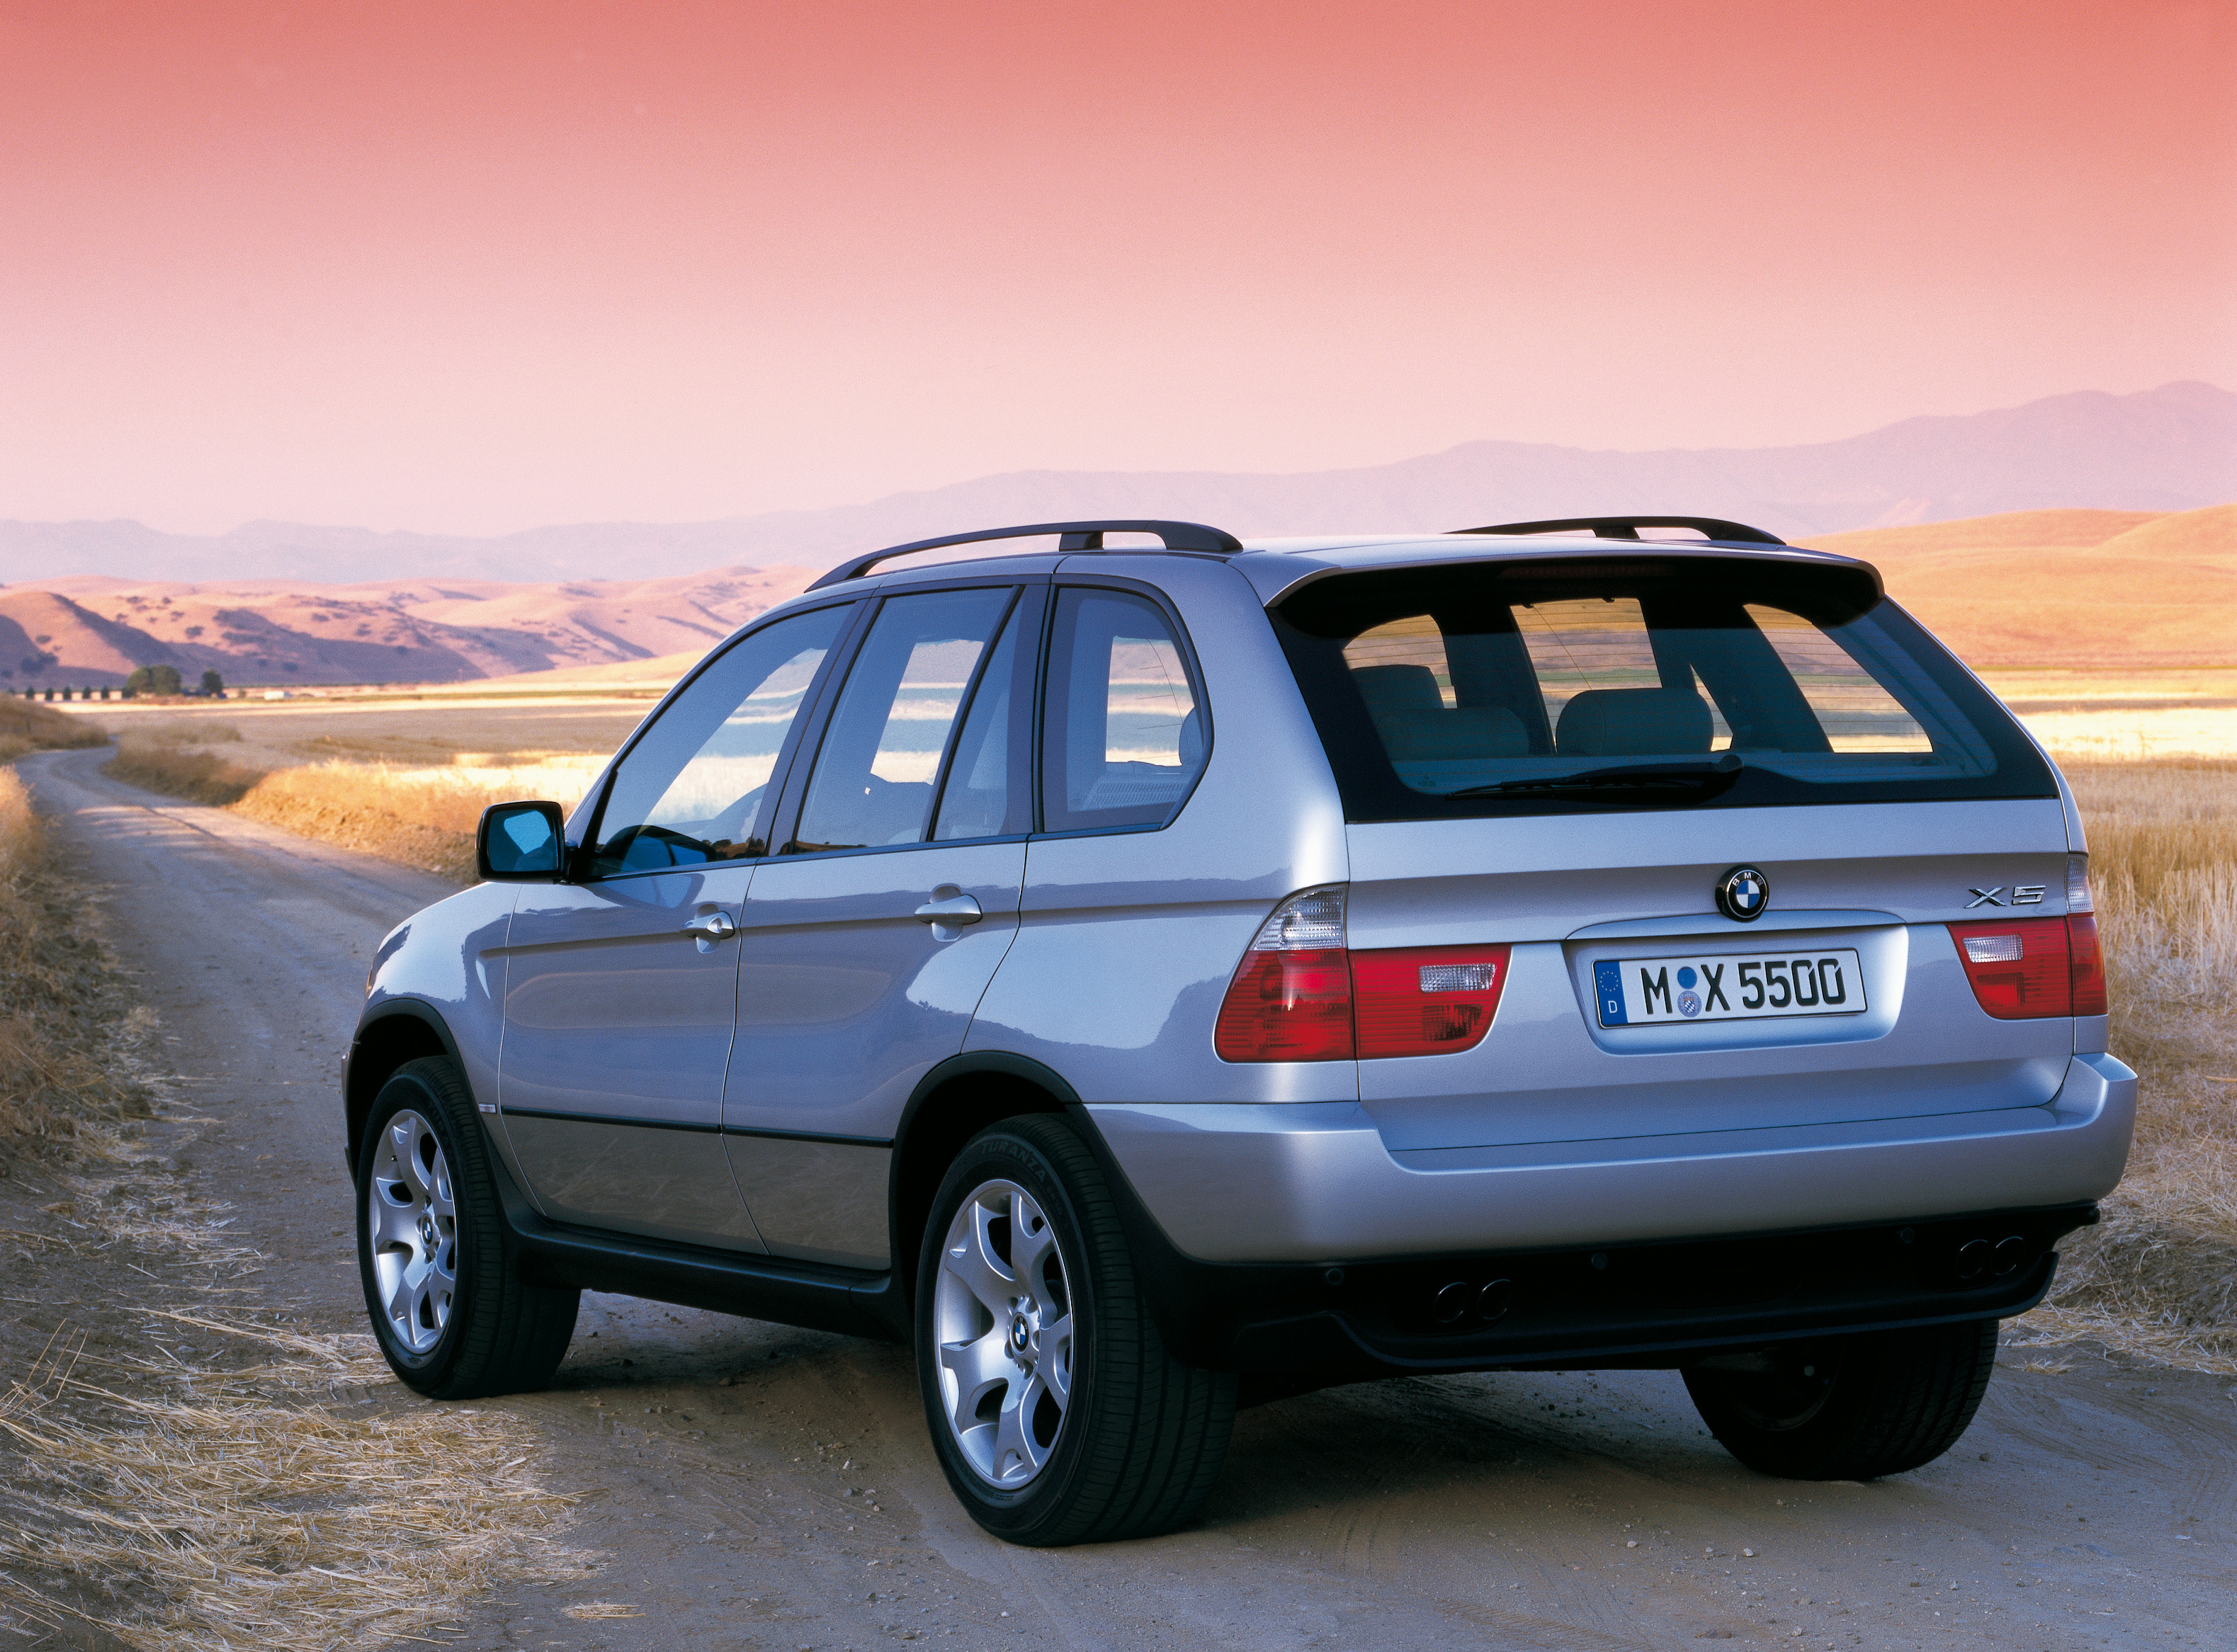 Bmw x5 1. BMW x5 2000. БМВ х5 1999-2003. BMW x5 e53 2000. BMW x5 1999.